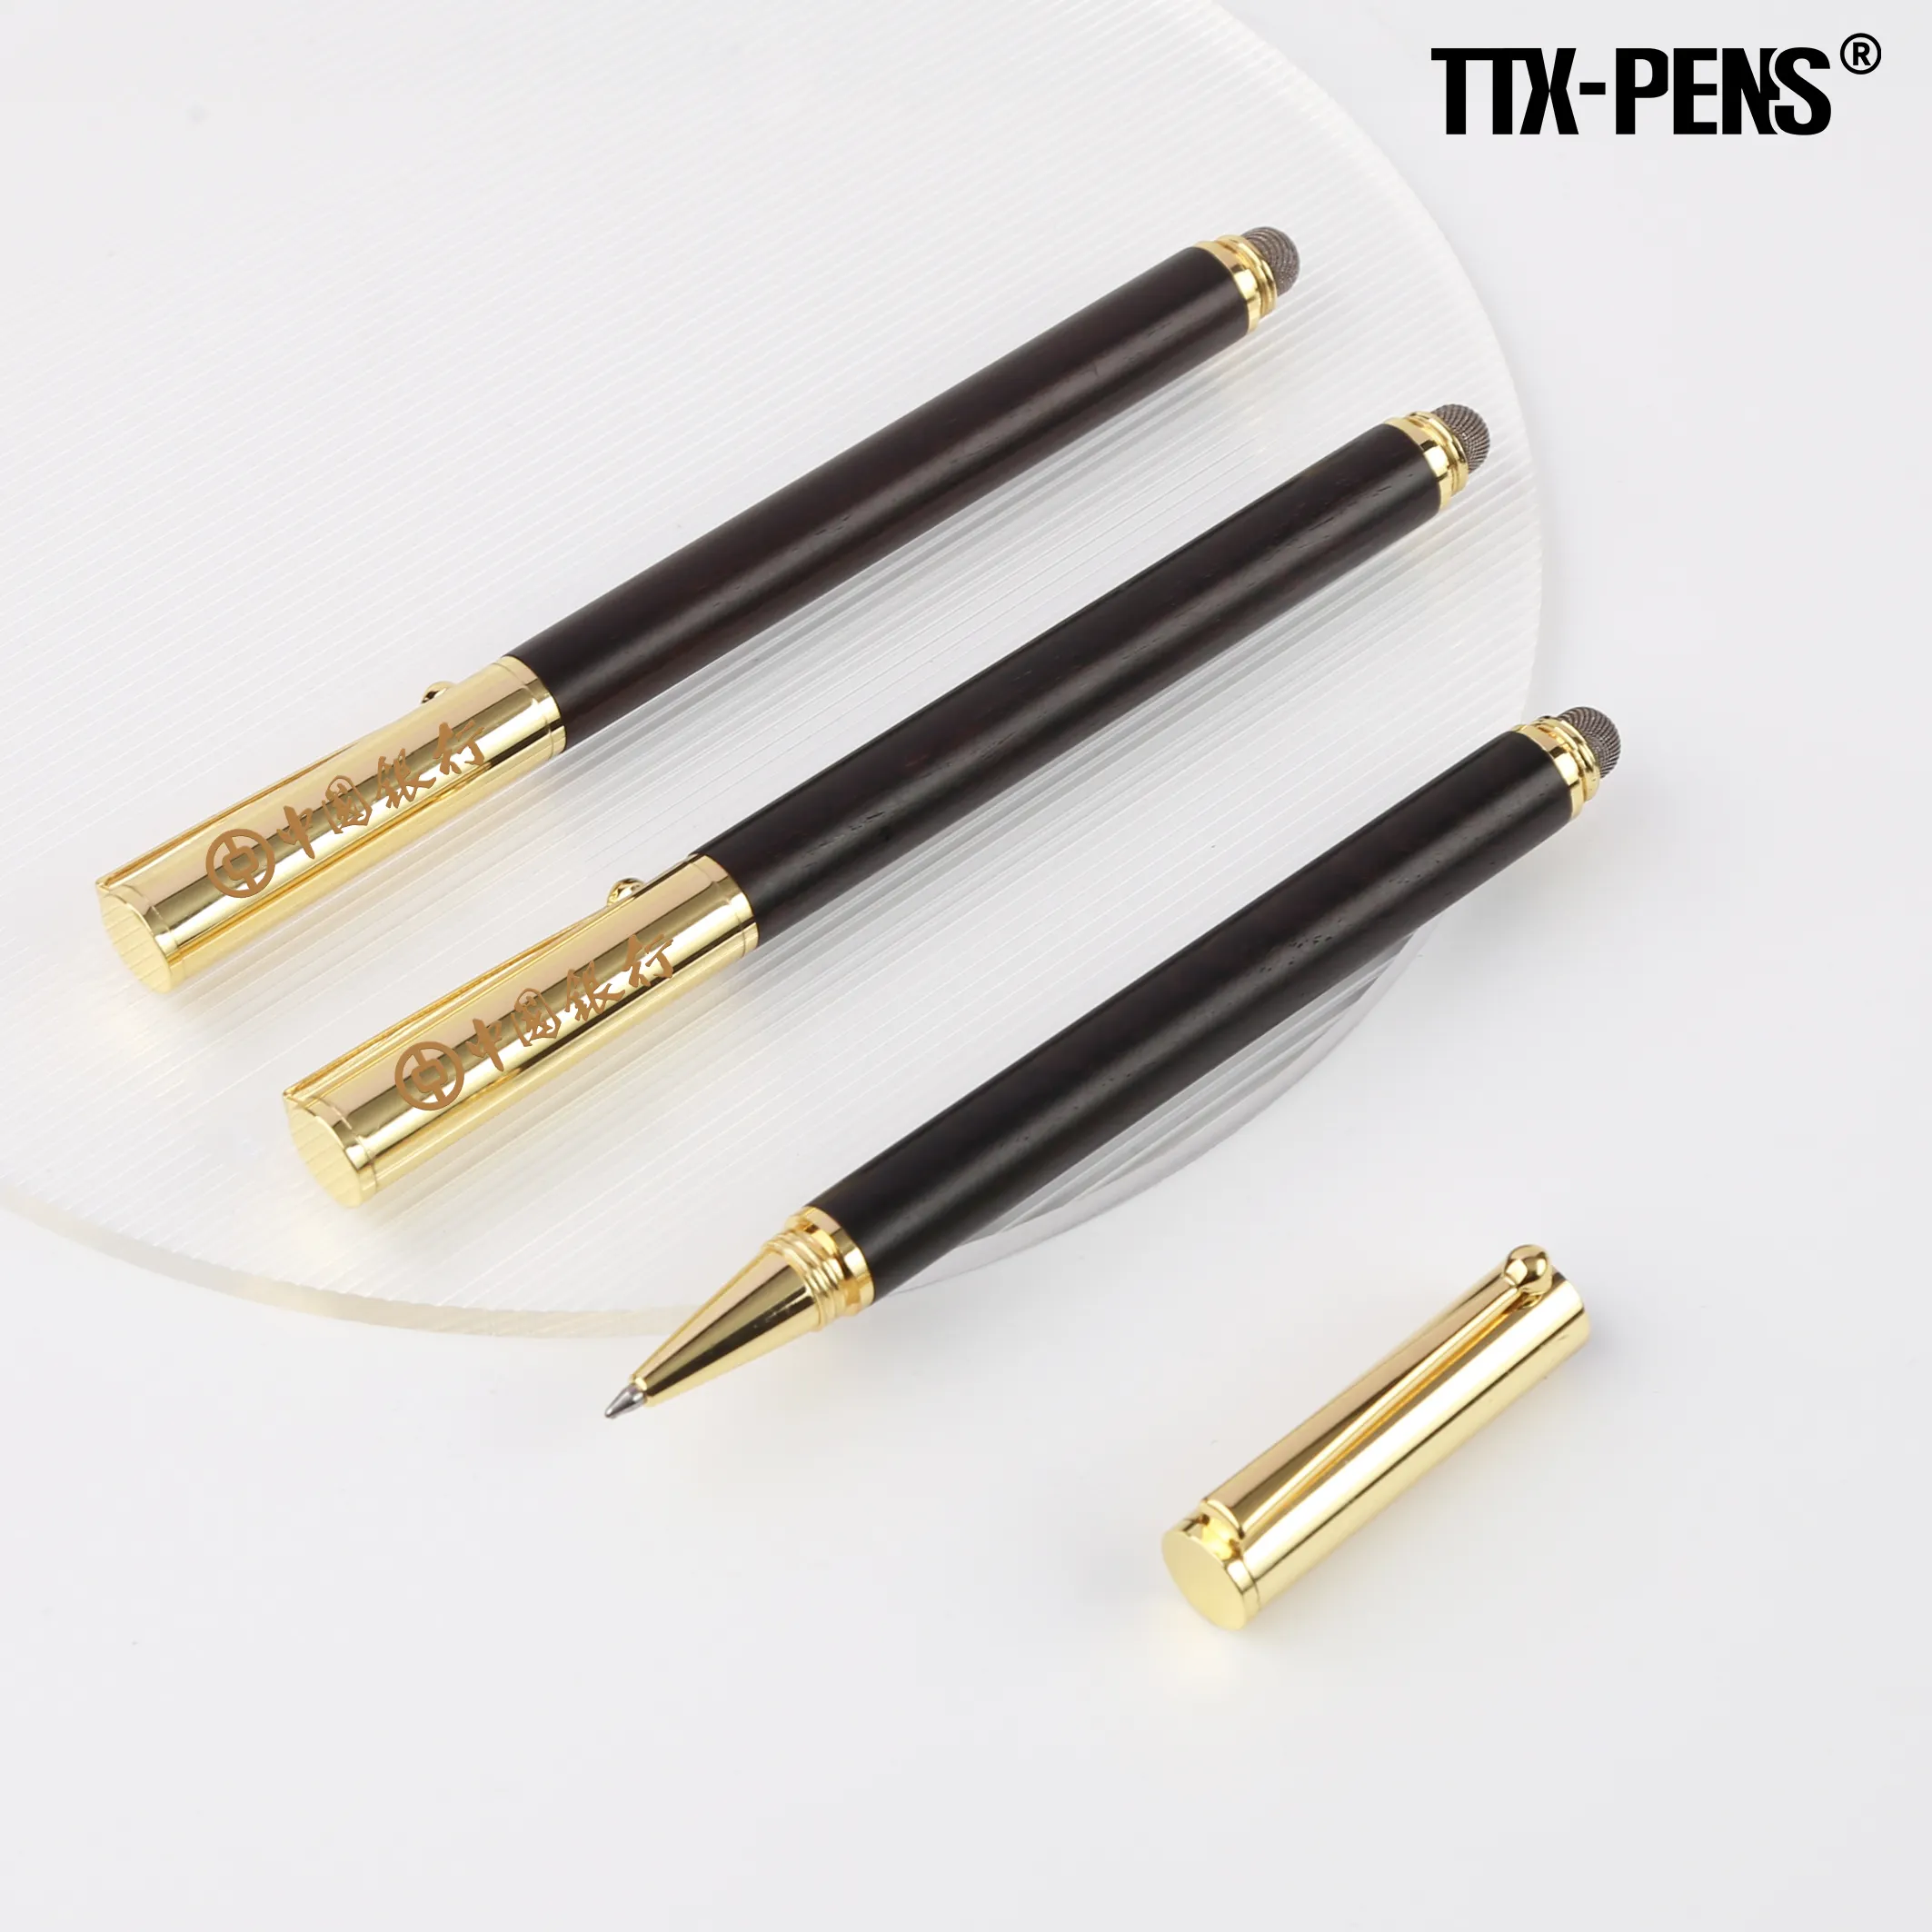 TTX kaliteli lüks 2 in 1 siyah metalik topu özel Logo İşlevli Stylus tükenmez Metal dokunmatik kalem